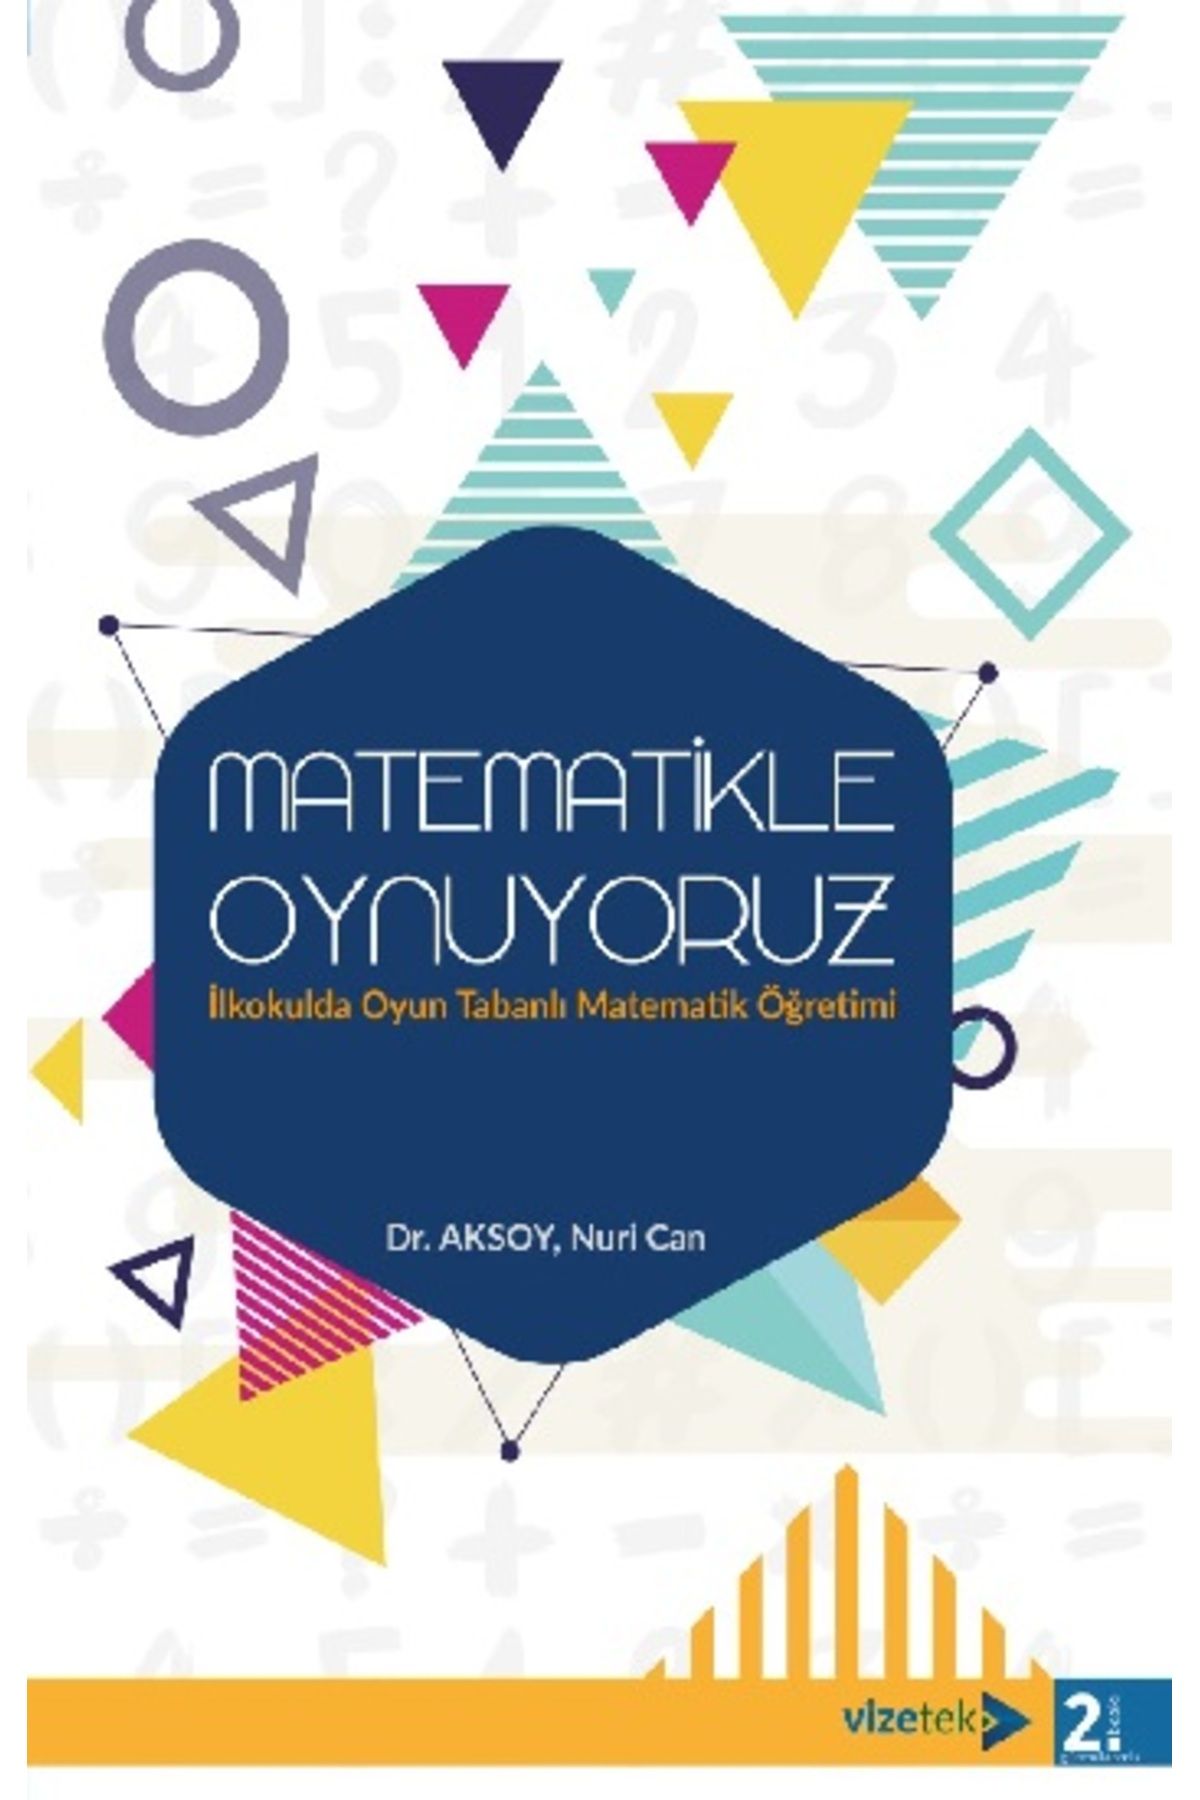 Vizetek Yayıncılık Matematikle Oynuyoruz İlkokulda Oyun Tabanlı Matematik Öğretimi kitabı / Nuri Can Aksoy / Vizetek Ya